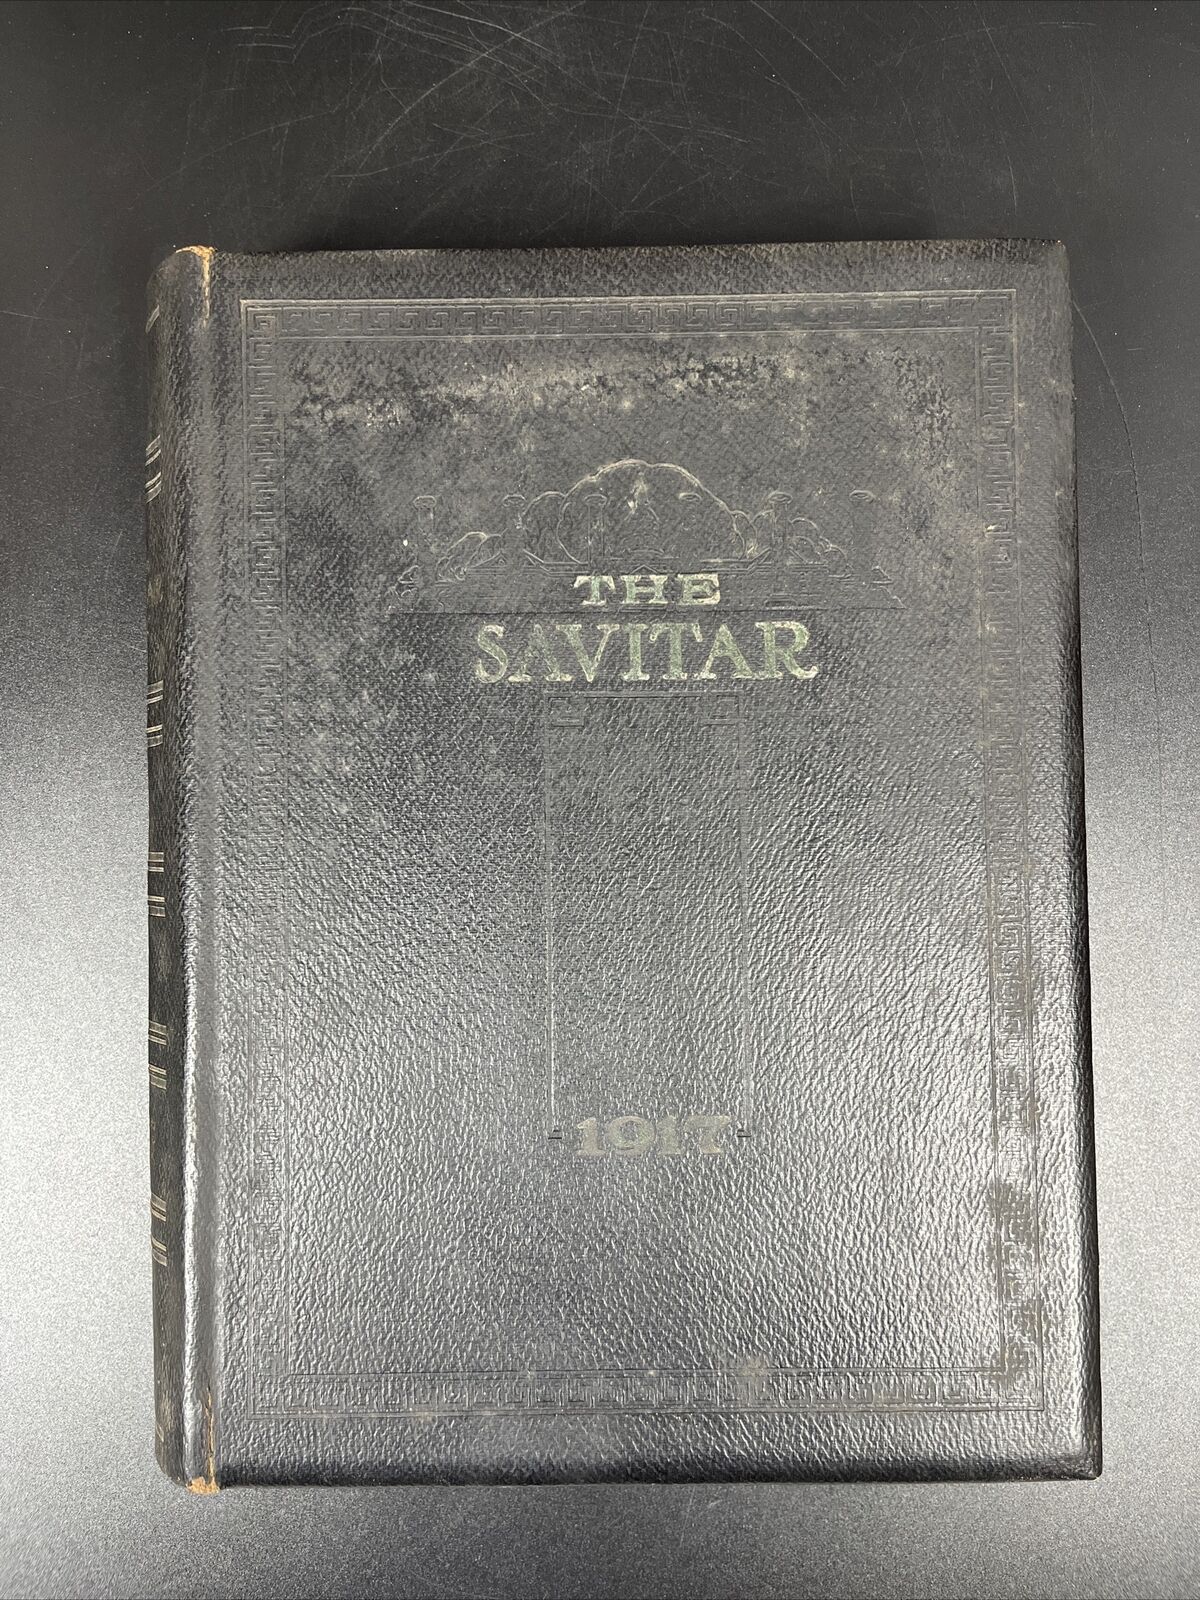 1917 UNIVERSITY OF MISSOURI YEARBOOK, THE SAVITAR - COLUMBIA, MO - RARE